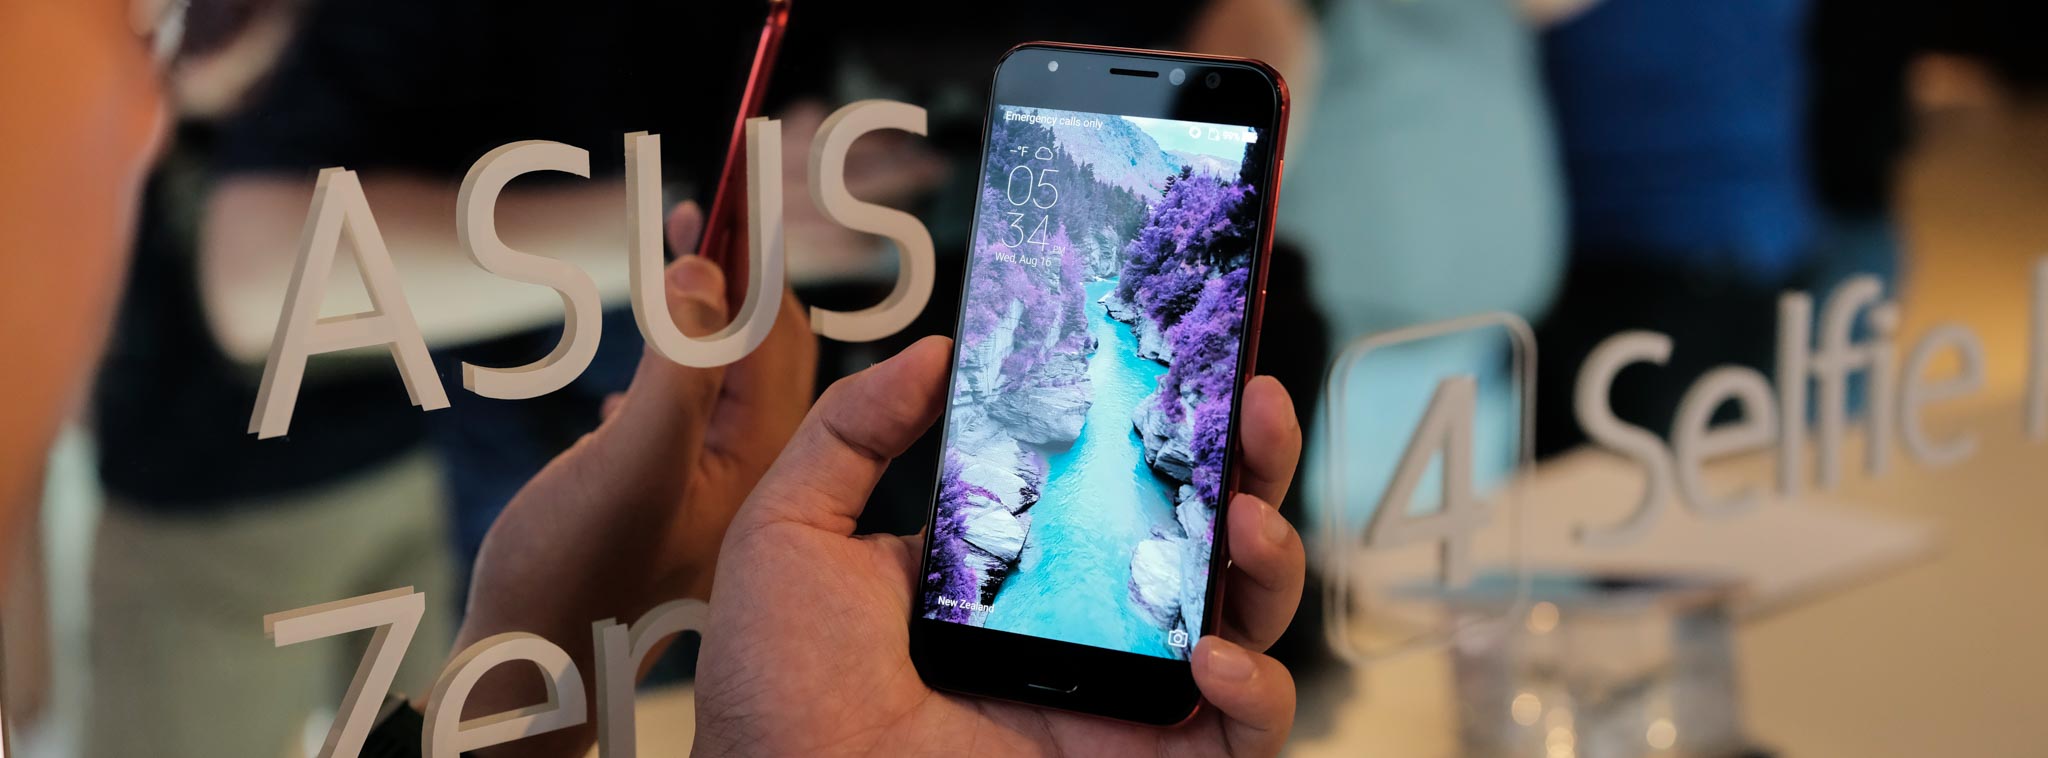 Trên tay Asus Zenfone 4 Selfie Pro: đem camera sau lên đằng trước, quay video selfie 4K